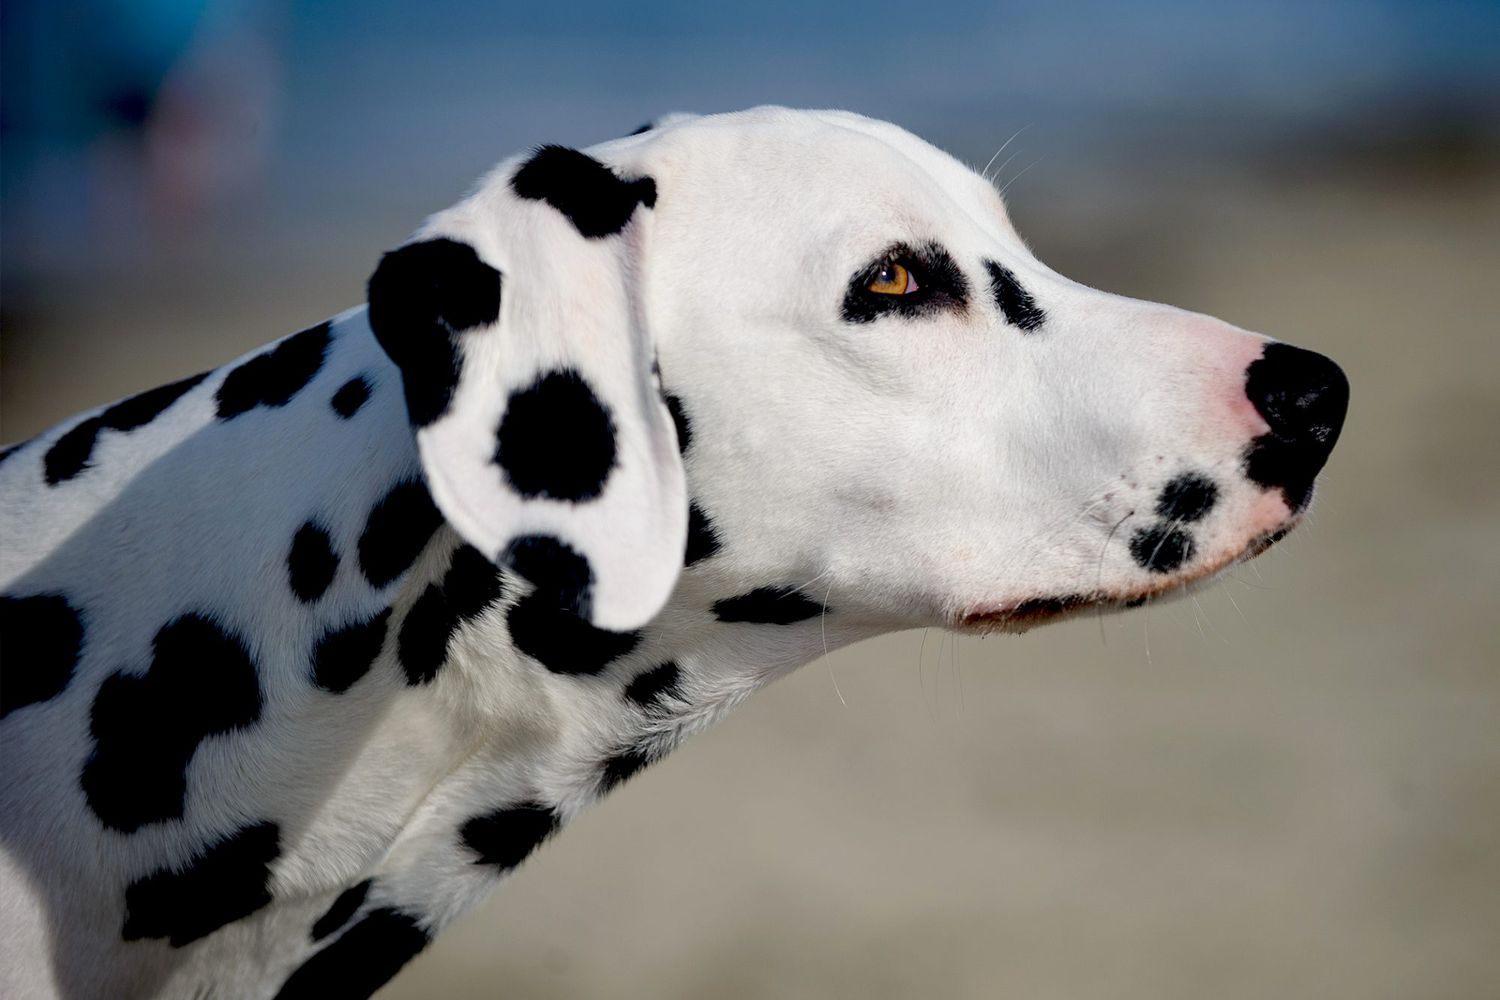 Profile of Dalmatian